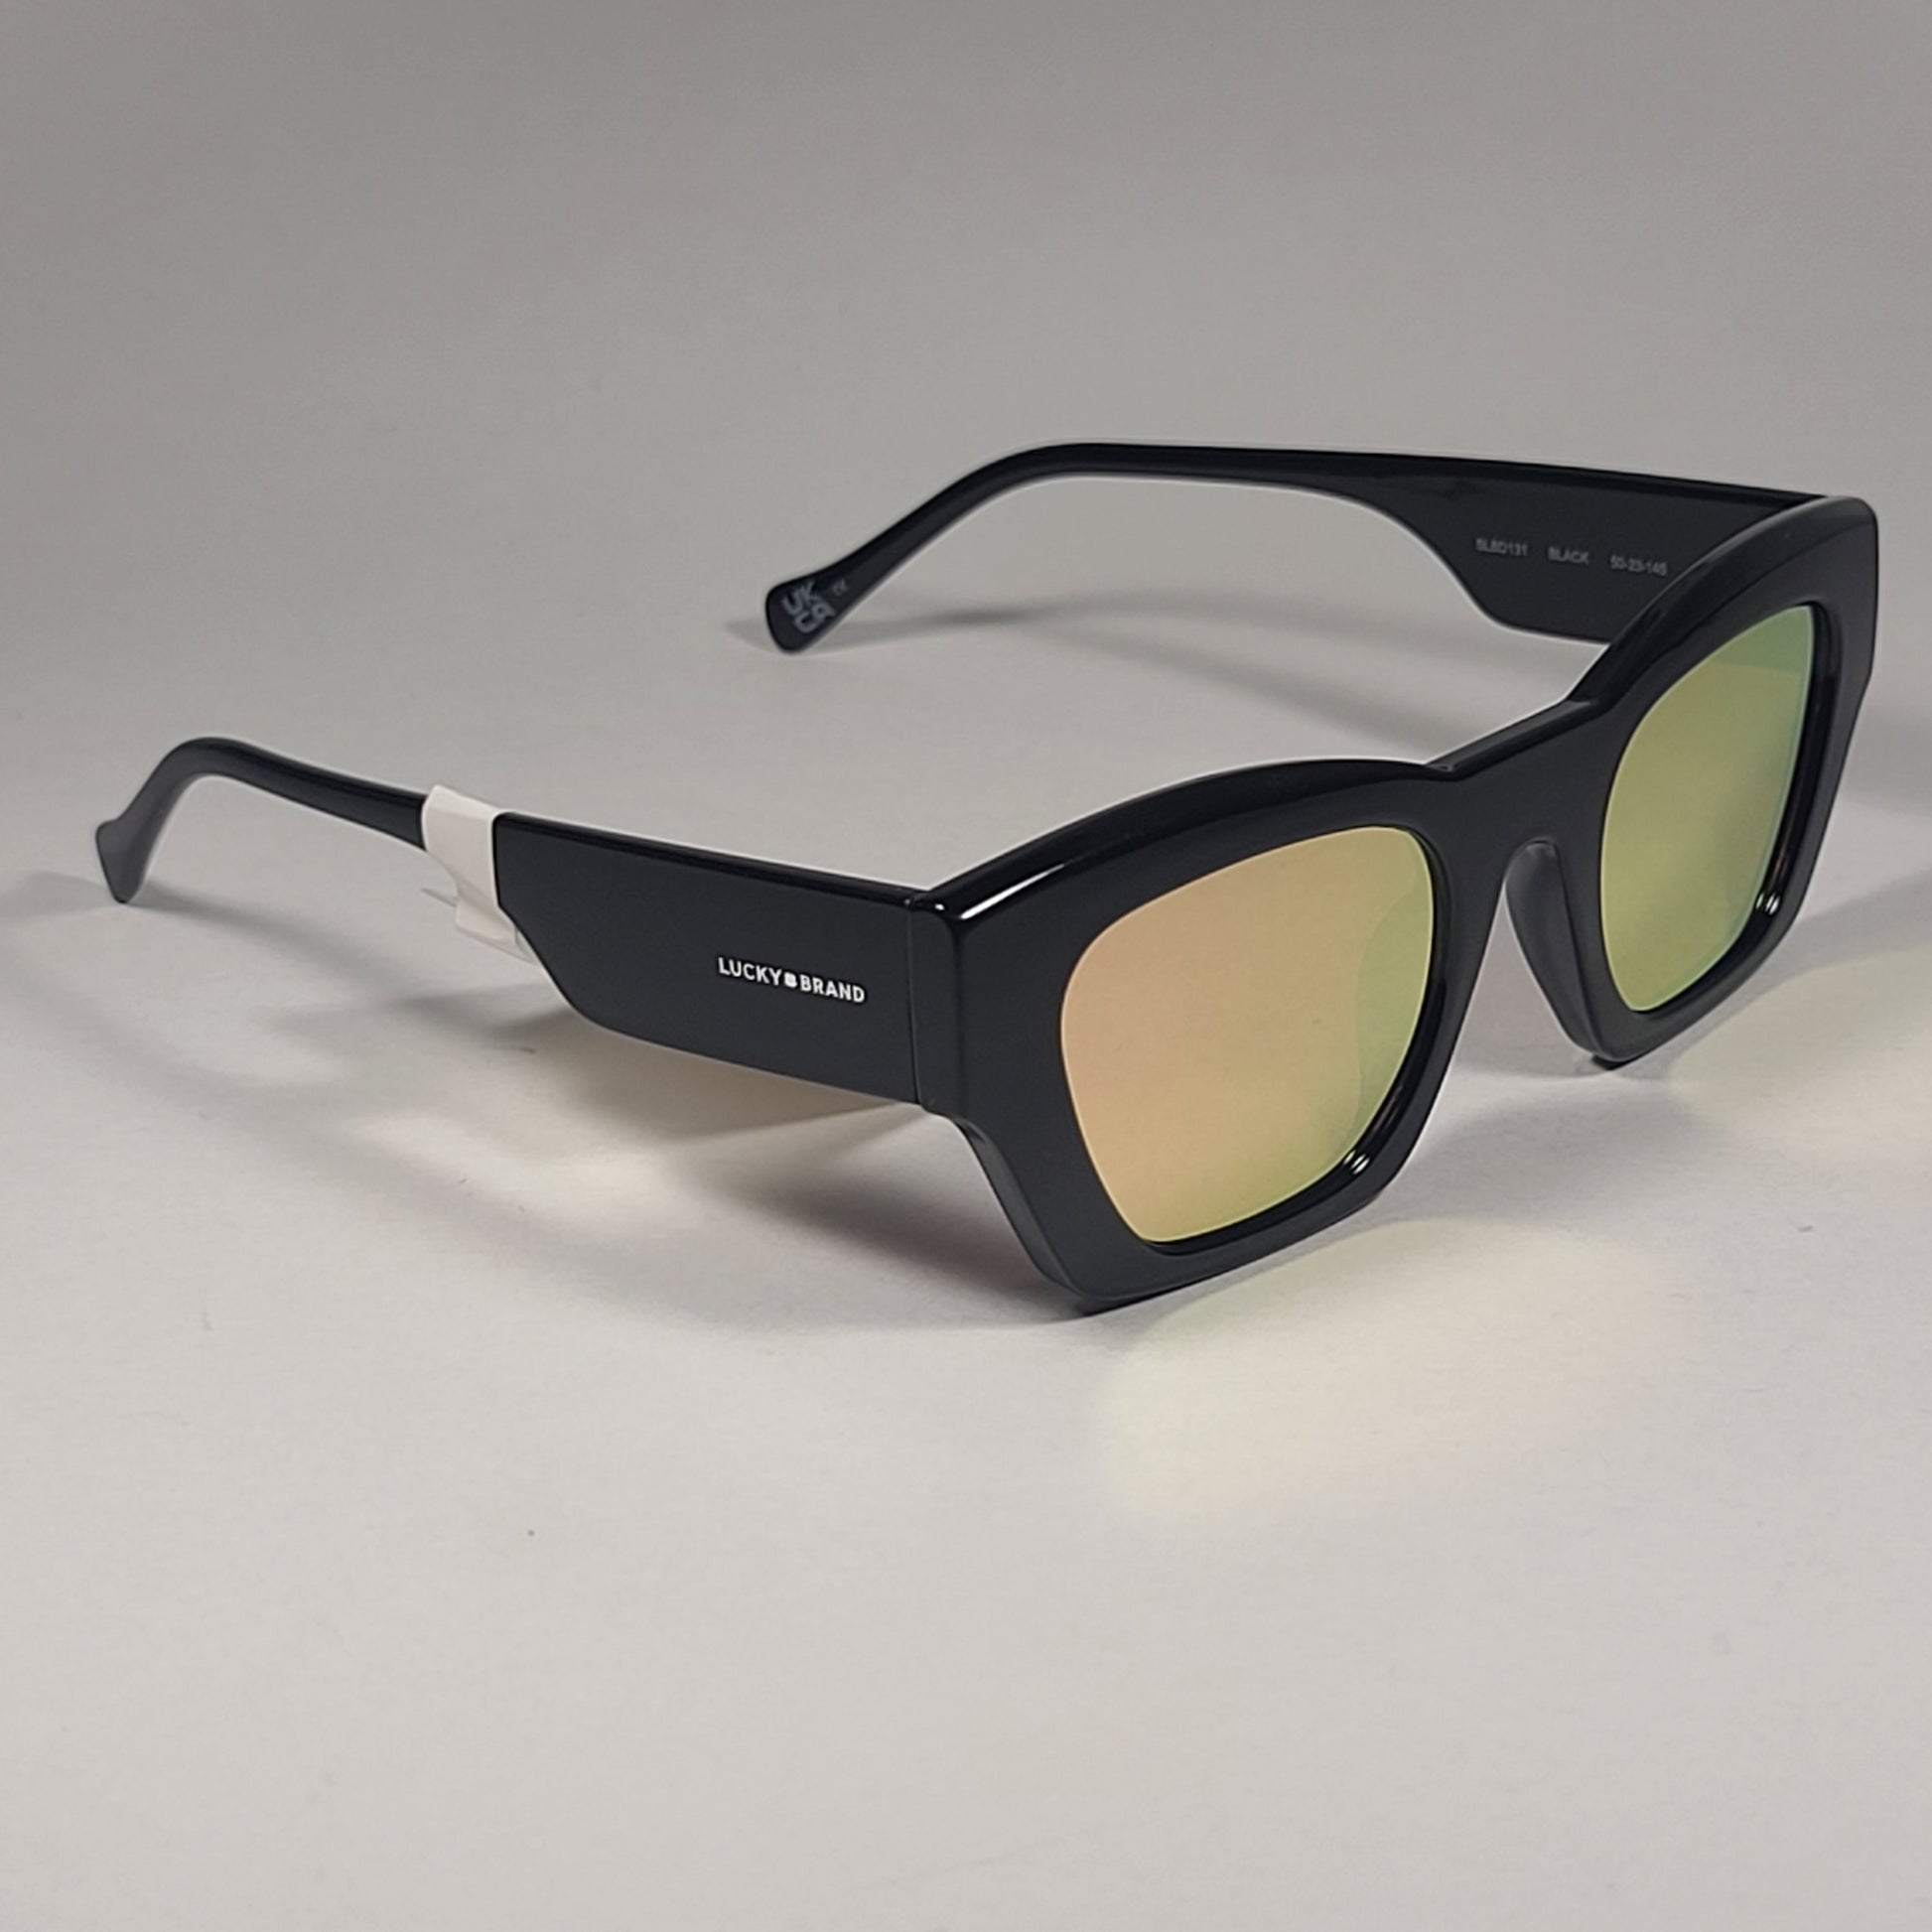 Lucky Brand SLBD131 BLACK Cat Eye Sunglasses Black Frame Orange Yellow Mirror Lens